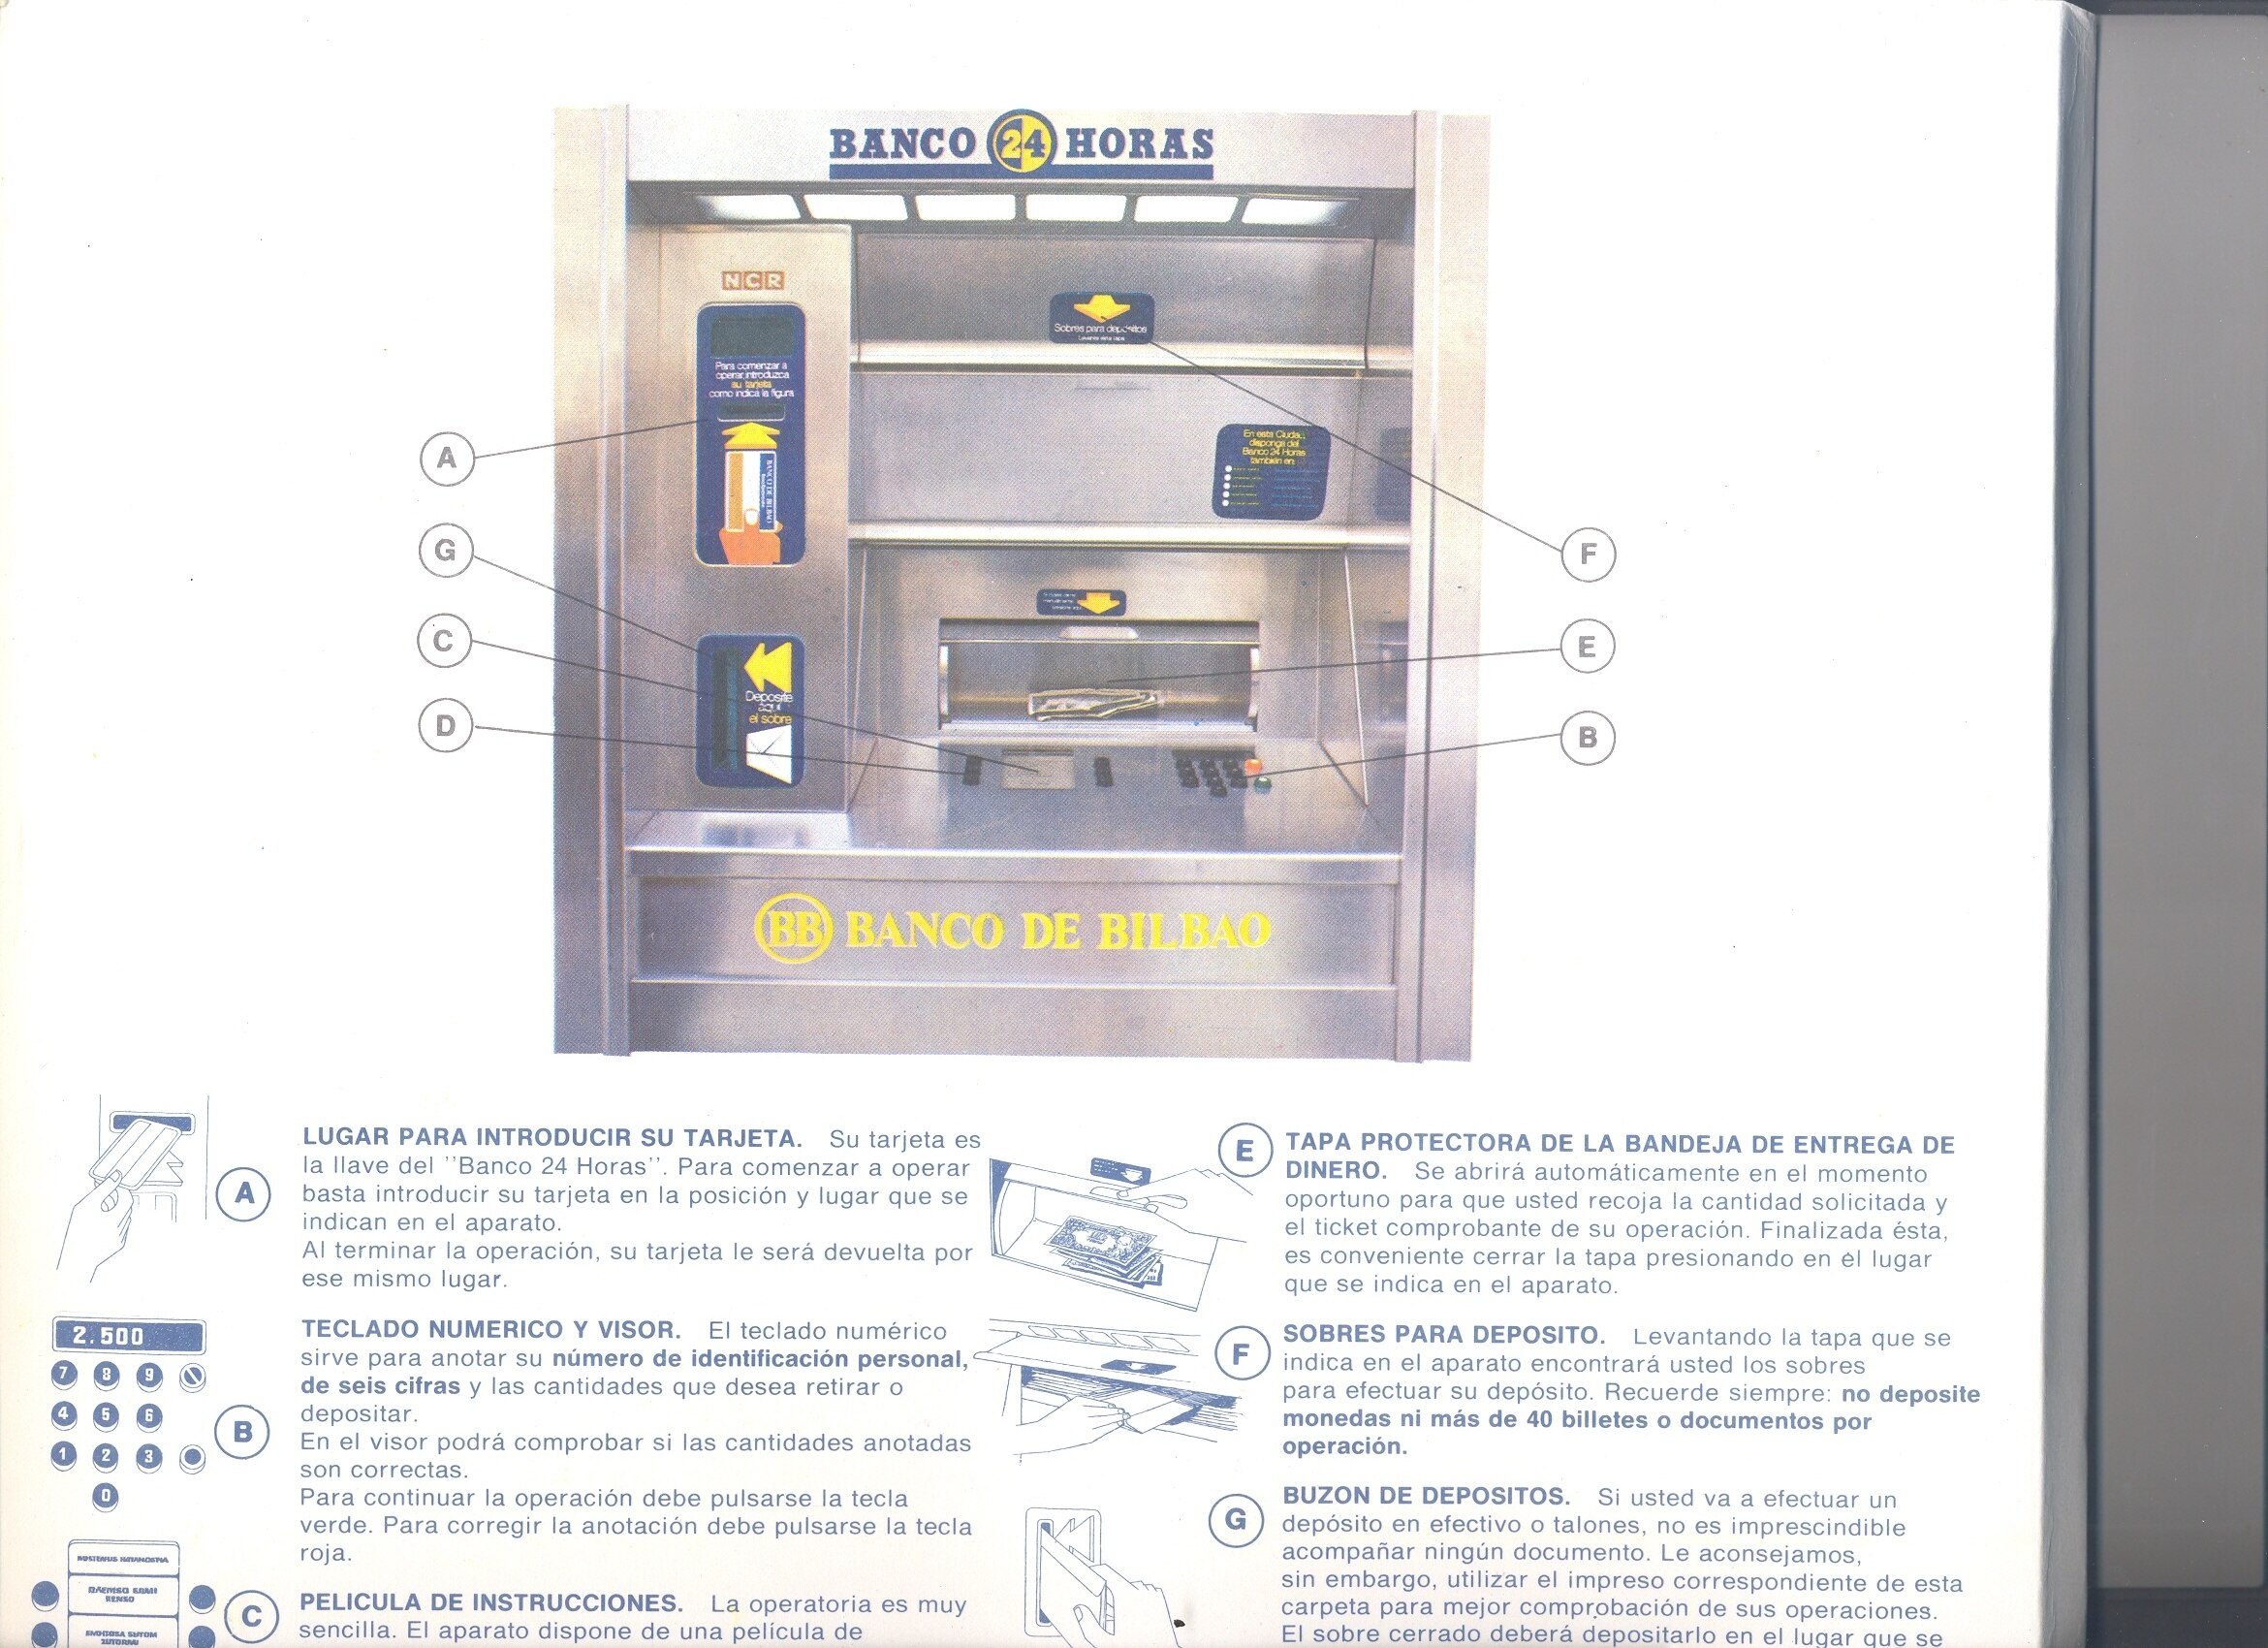 ATM - BBVA Banco de Bilbao - user's instrucctions